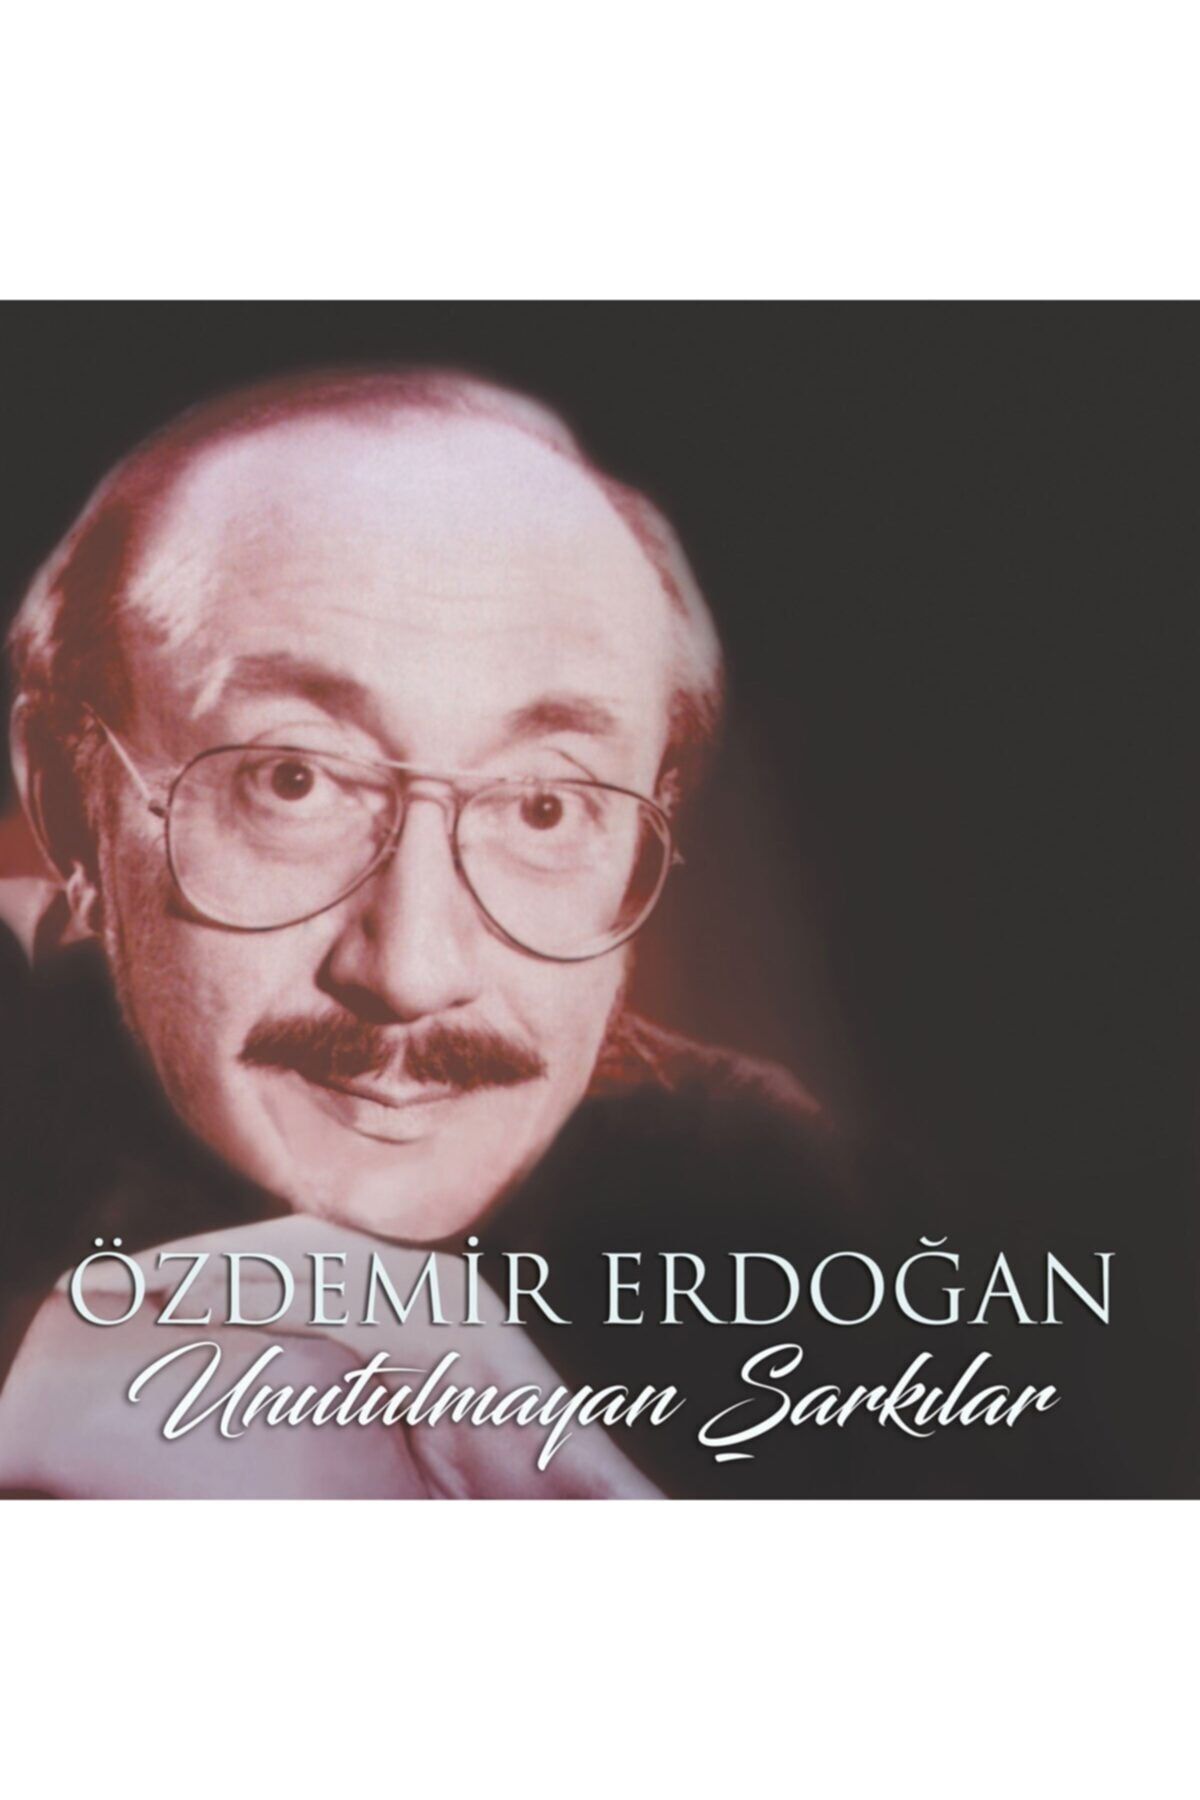 Ucuz Plak & Pikap Hediyelik Eşya Özdemir Erdoğan Unutulmayan Şarkılar (plak - 33 Devir)